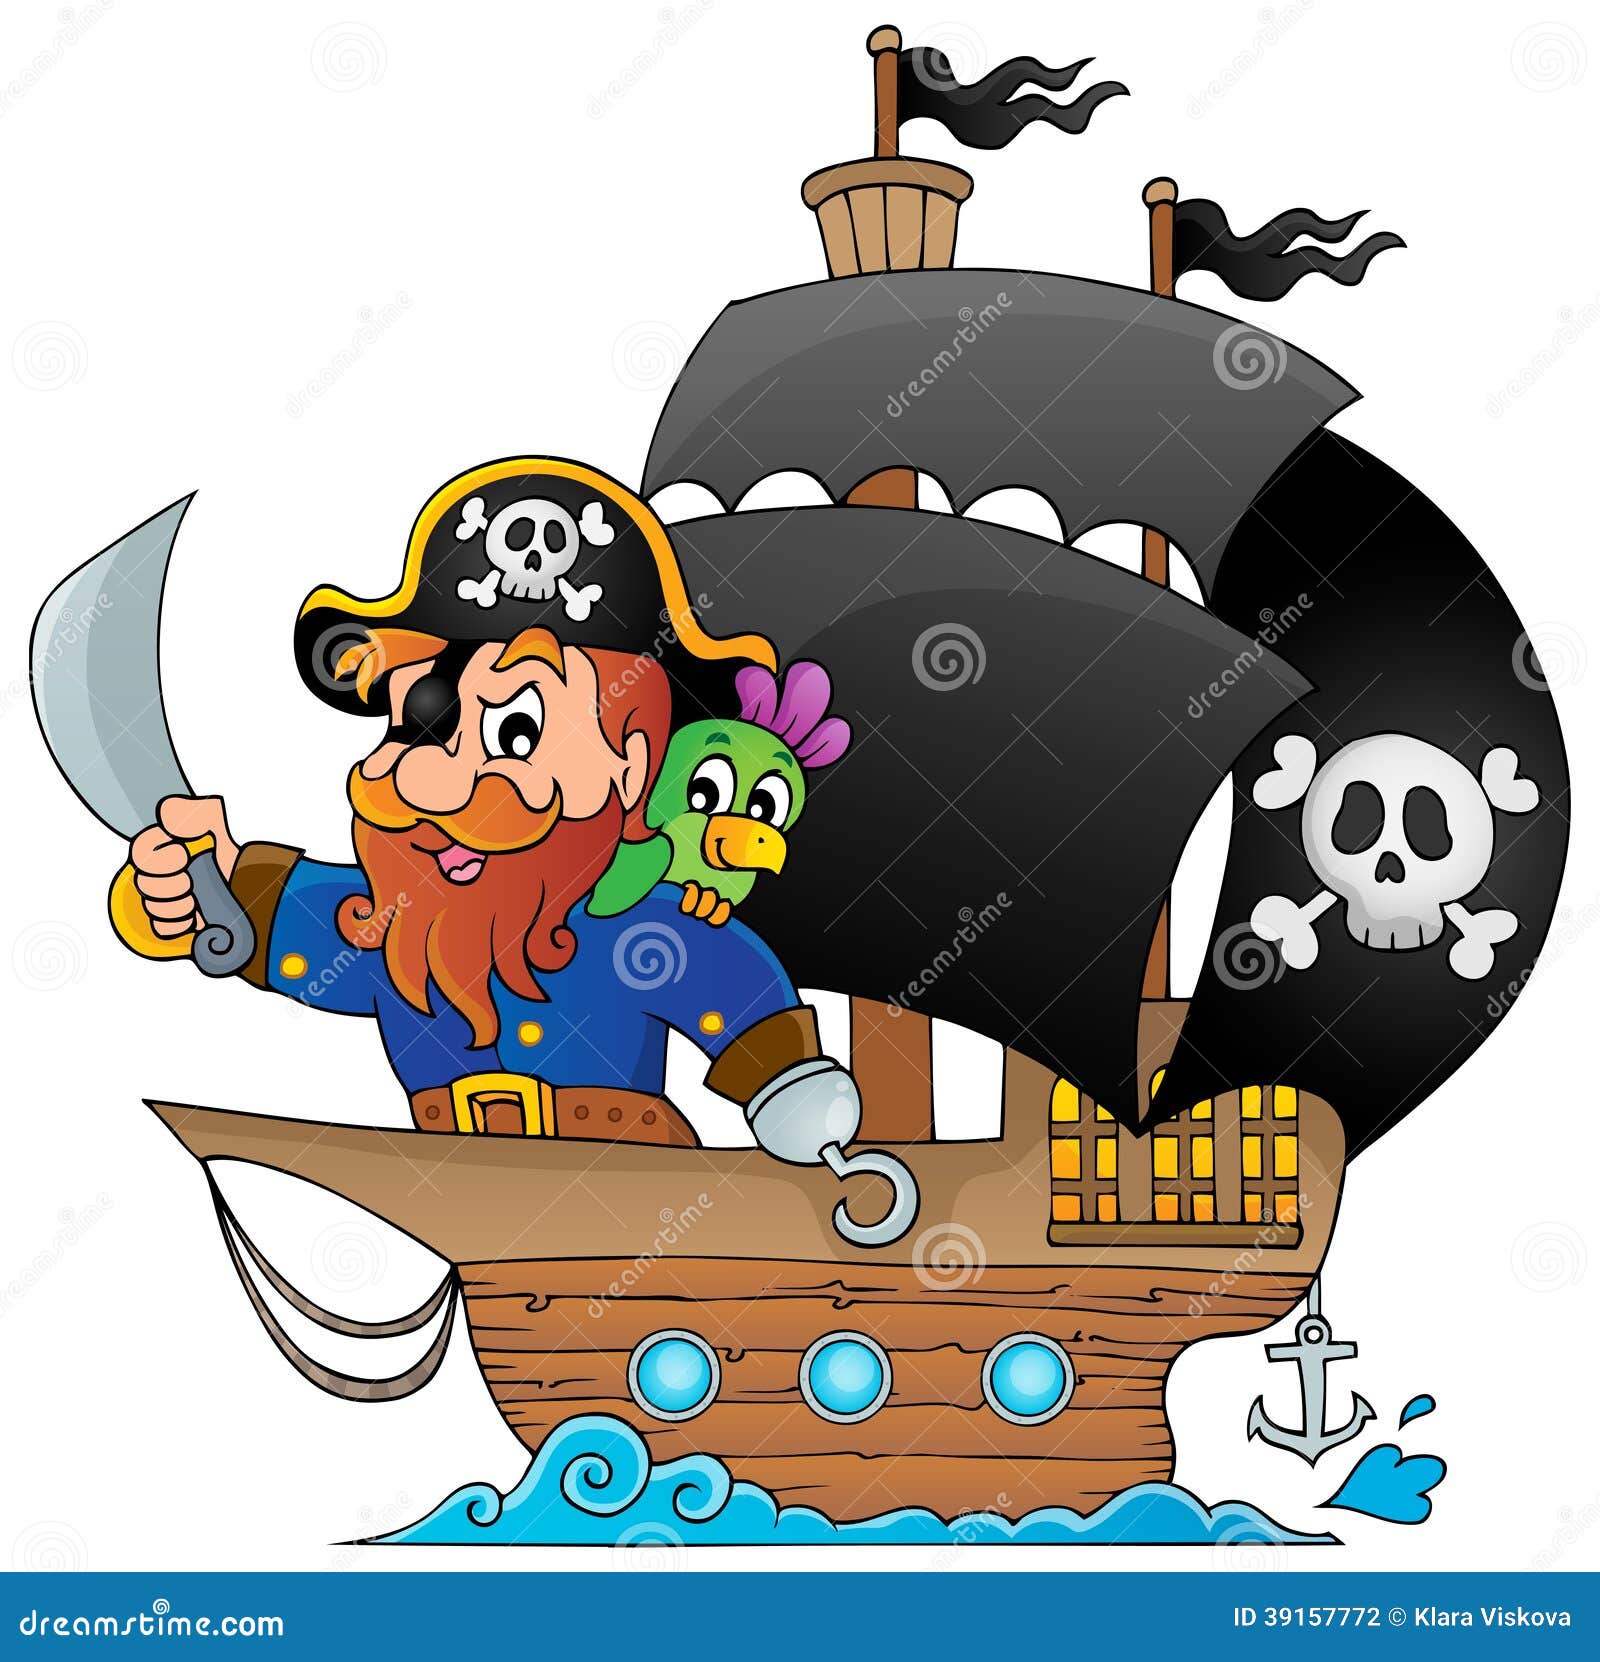 Пират 1 без. Корабль пиратов. Атрибуты пиратского корабля. Пираты мультяшные. Пиратский корабль для детей.